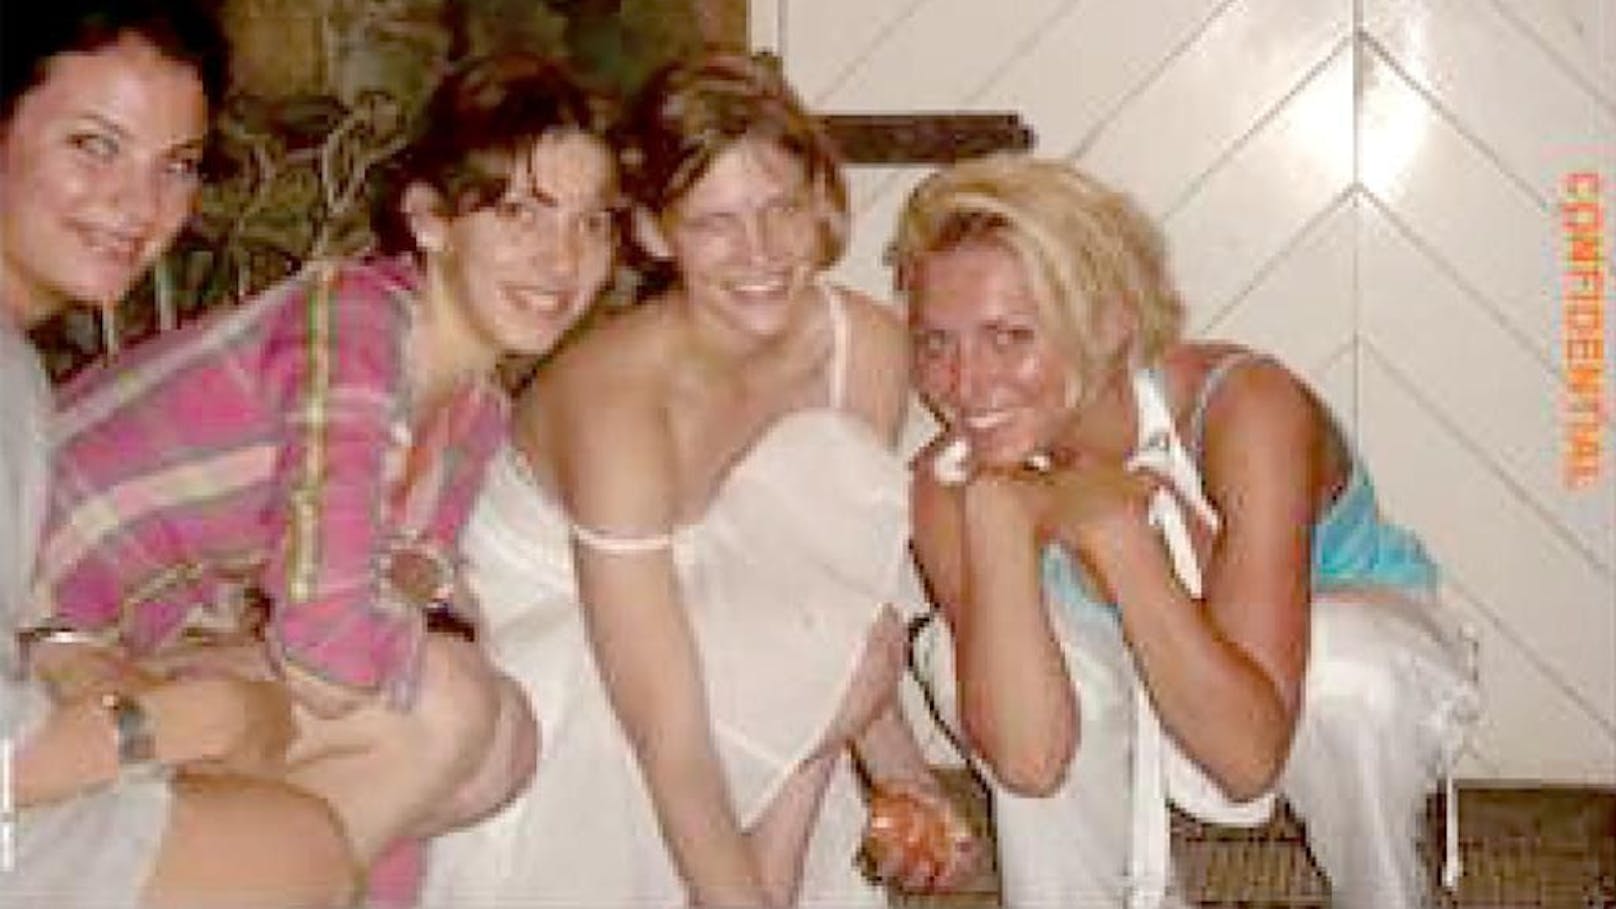 Die Fotos von jungen Mädchen und Frauen wurden laut Gerichtsdokumenten 2006 auf Jeffrey Epsteins privater Karibikinsel aufgenommen und zeigen auch die Anklägerin Sarah Ransome.